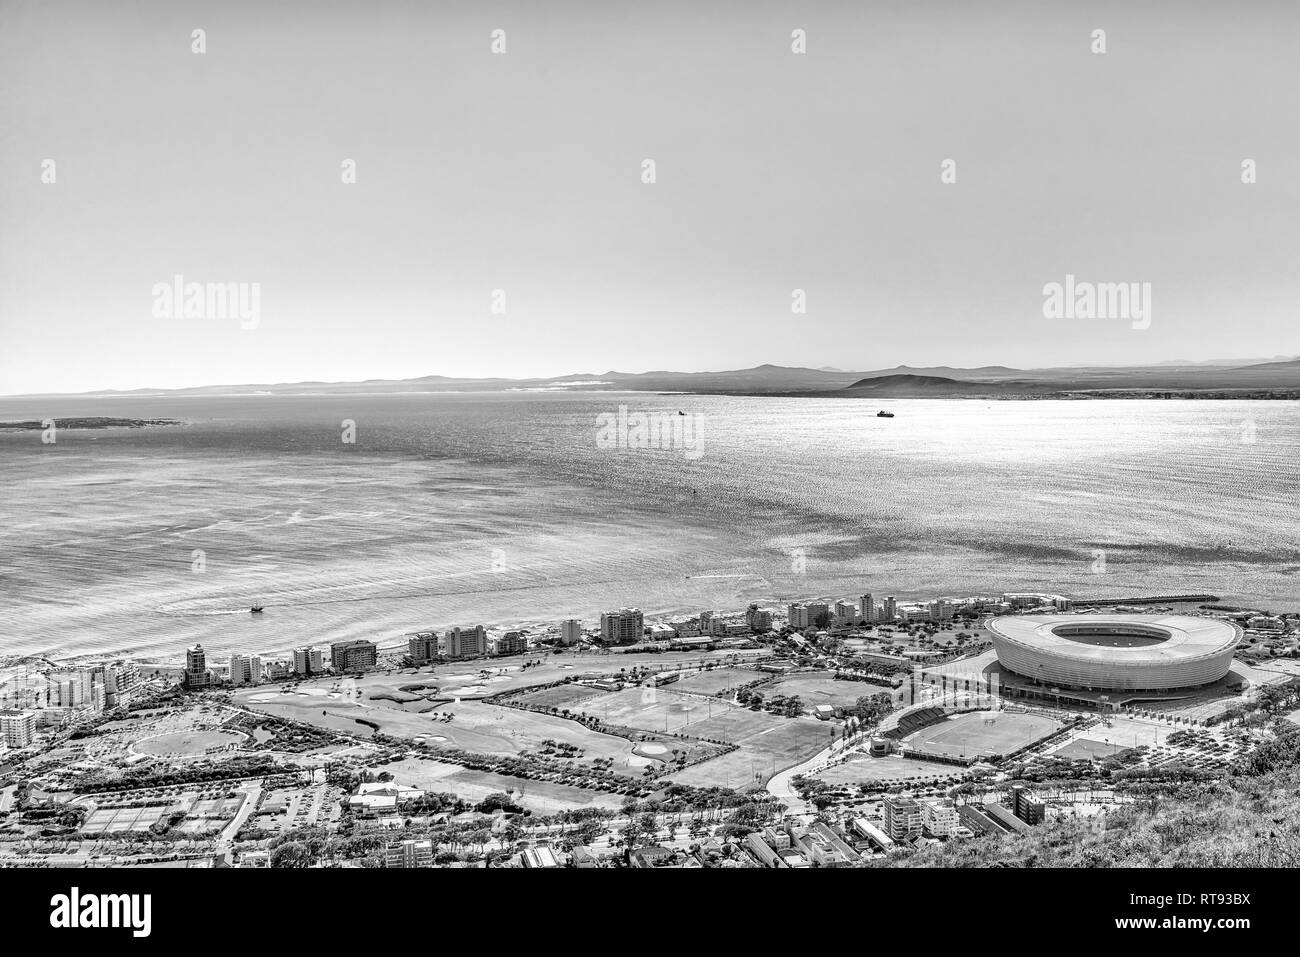 CAPE TOWN, AFRIQUE DU SUD, le 9 août 2018 : Une vue aérienne de Green Point à Cape Town vue de Signal Hill. Le Cape Town Stadium et d'autres fa Banque D'Images